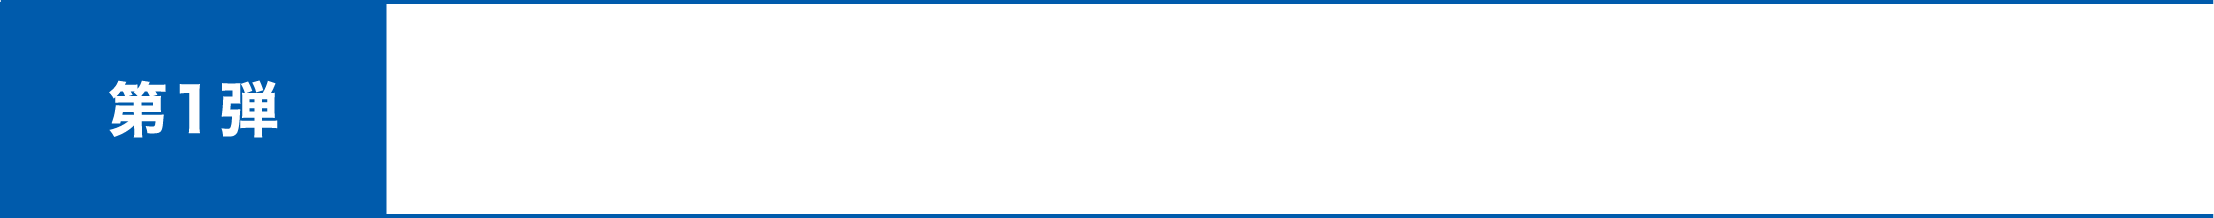 第1弾 スパイクマイスターKohei氏とゲキサカFCメンバーによるレビュー動画